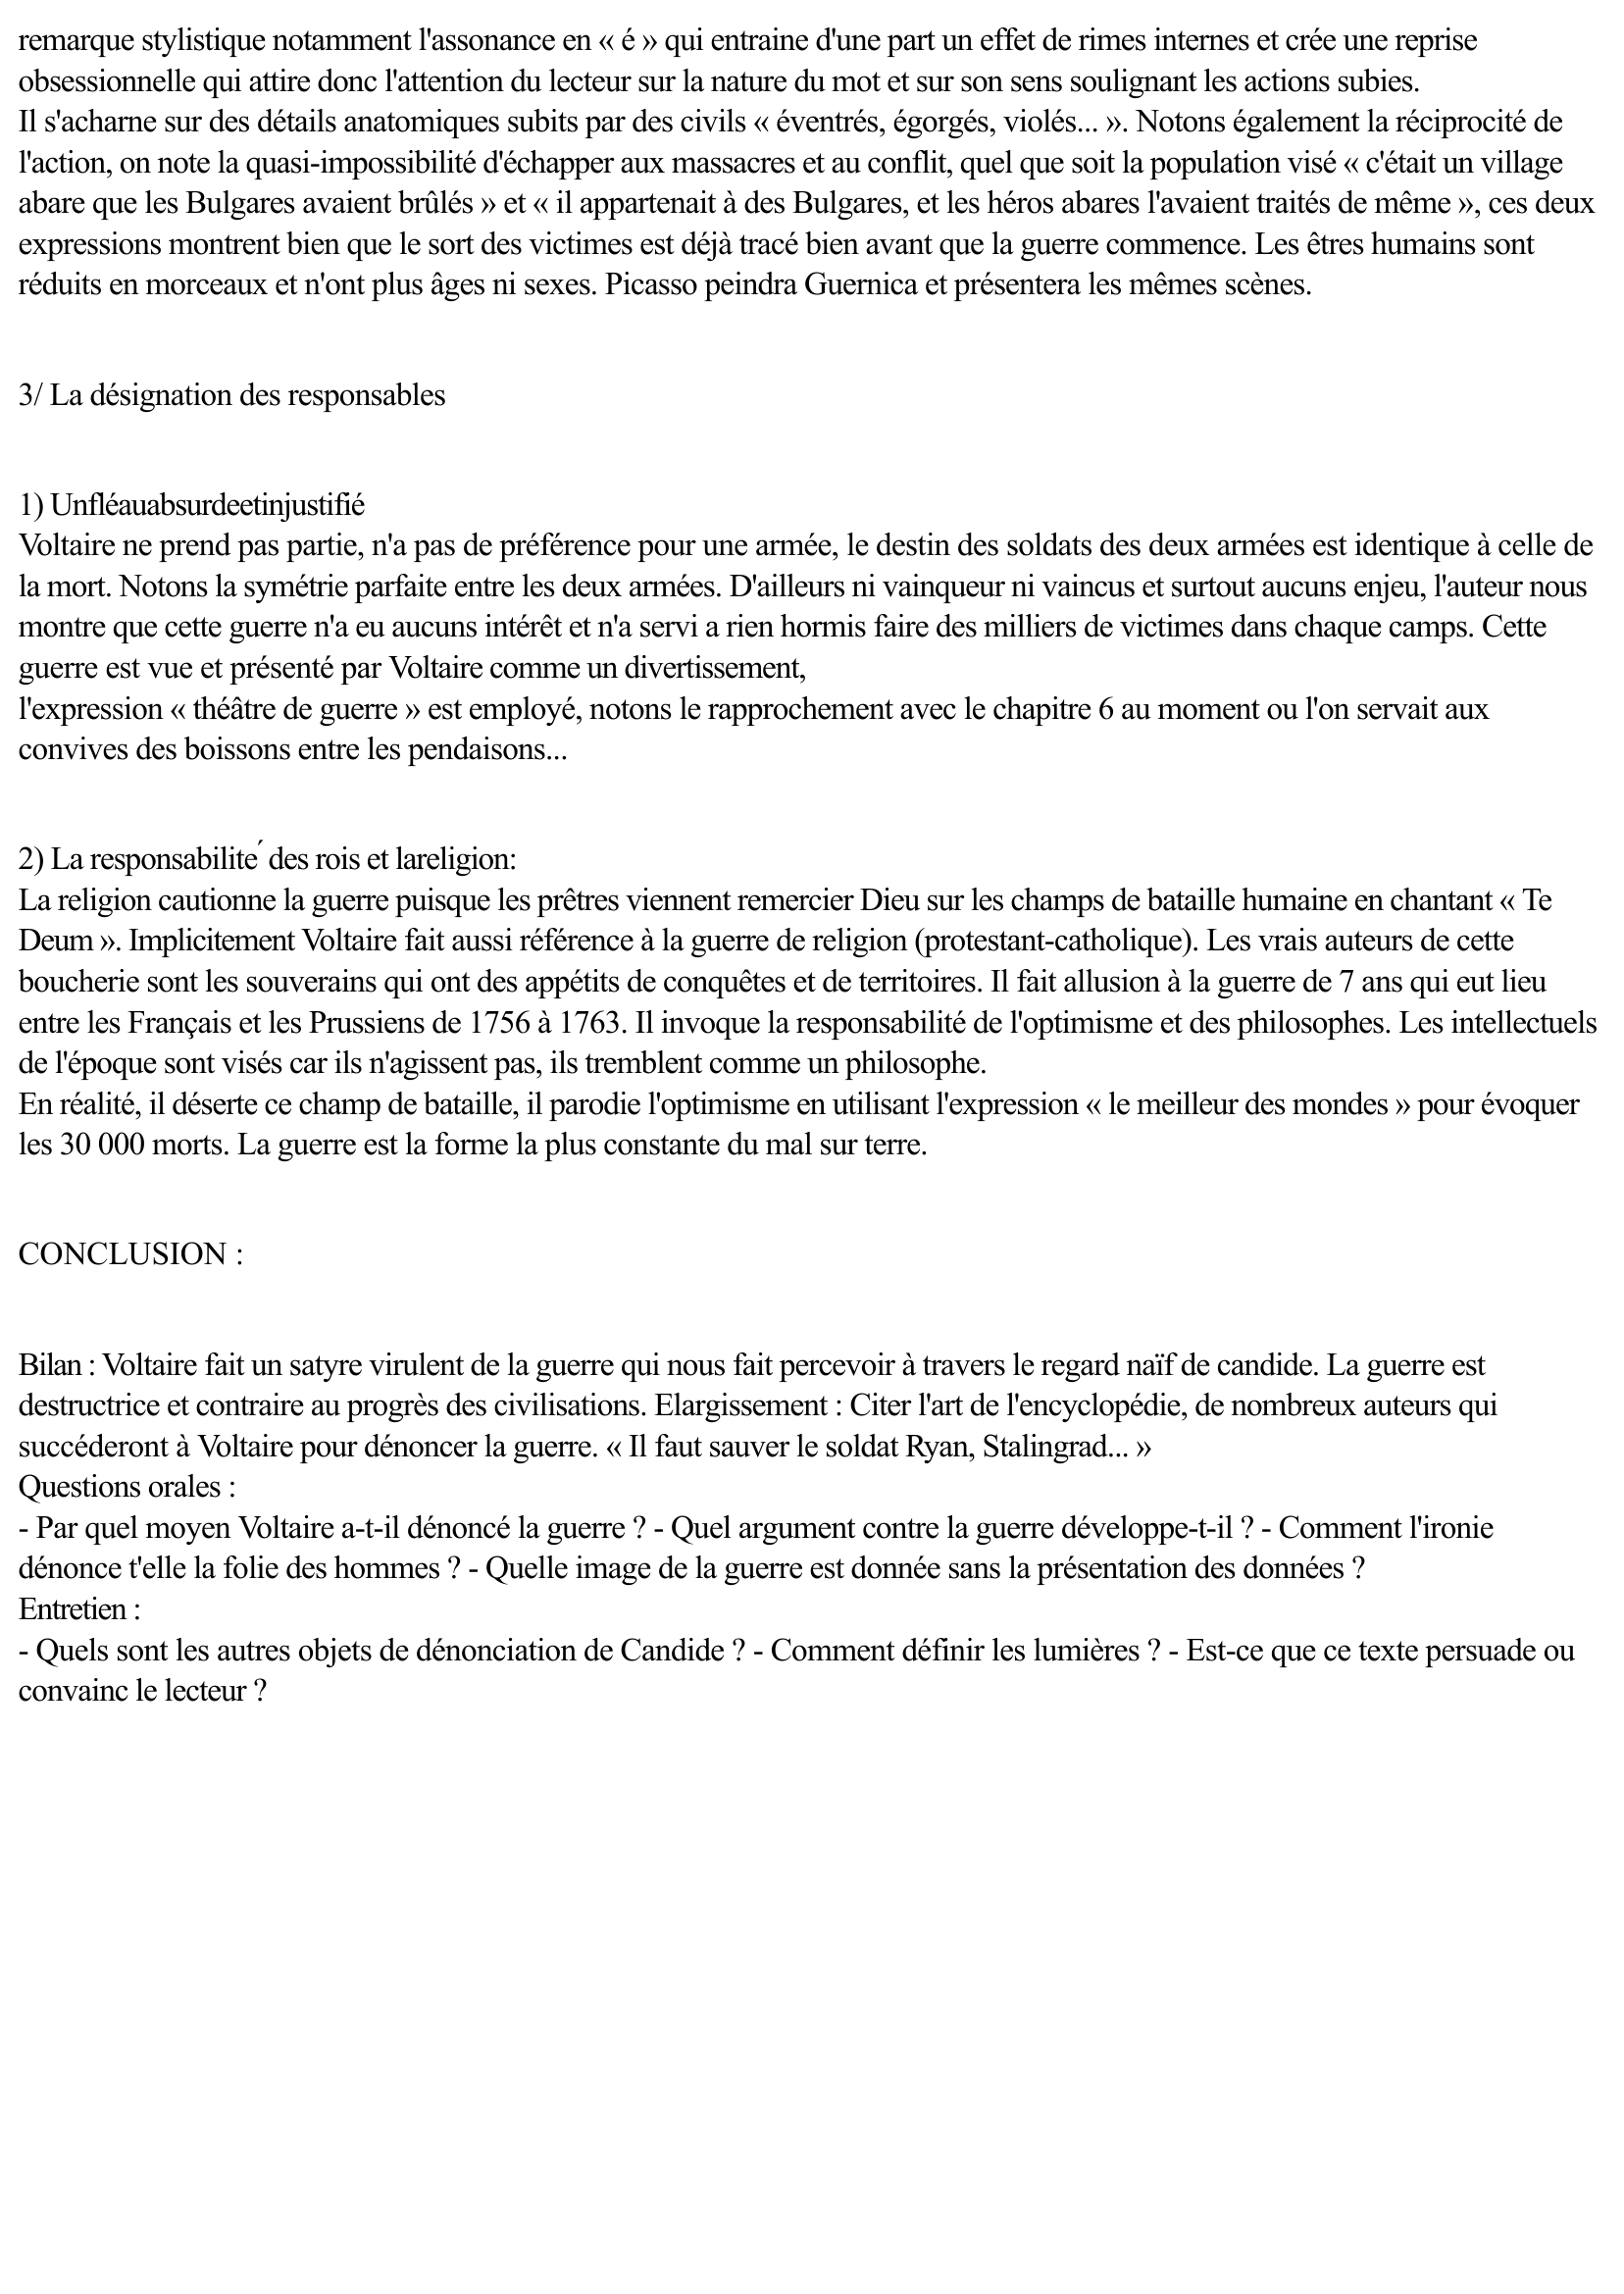 Prévisualisation du document LECTURE ANALYTIQUE CANDIDE, VOLTAIRE: Chapitre III « La guerre »